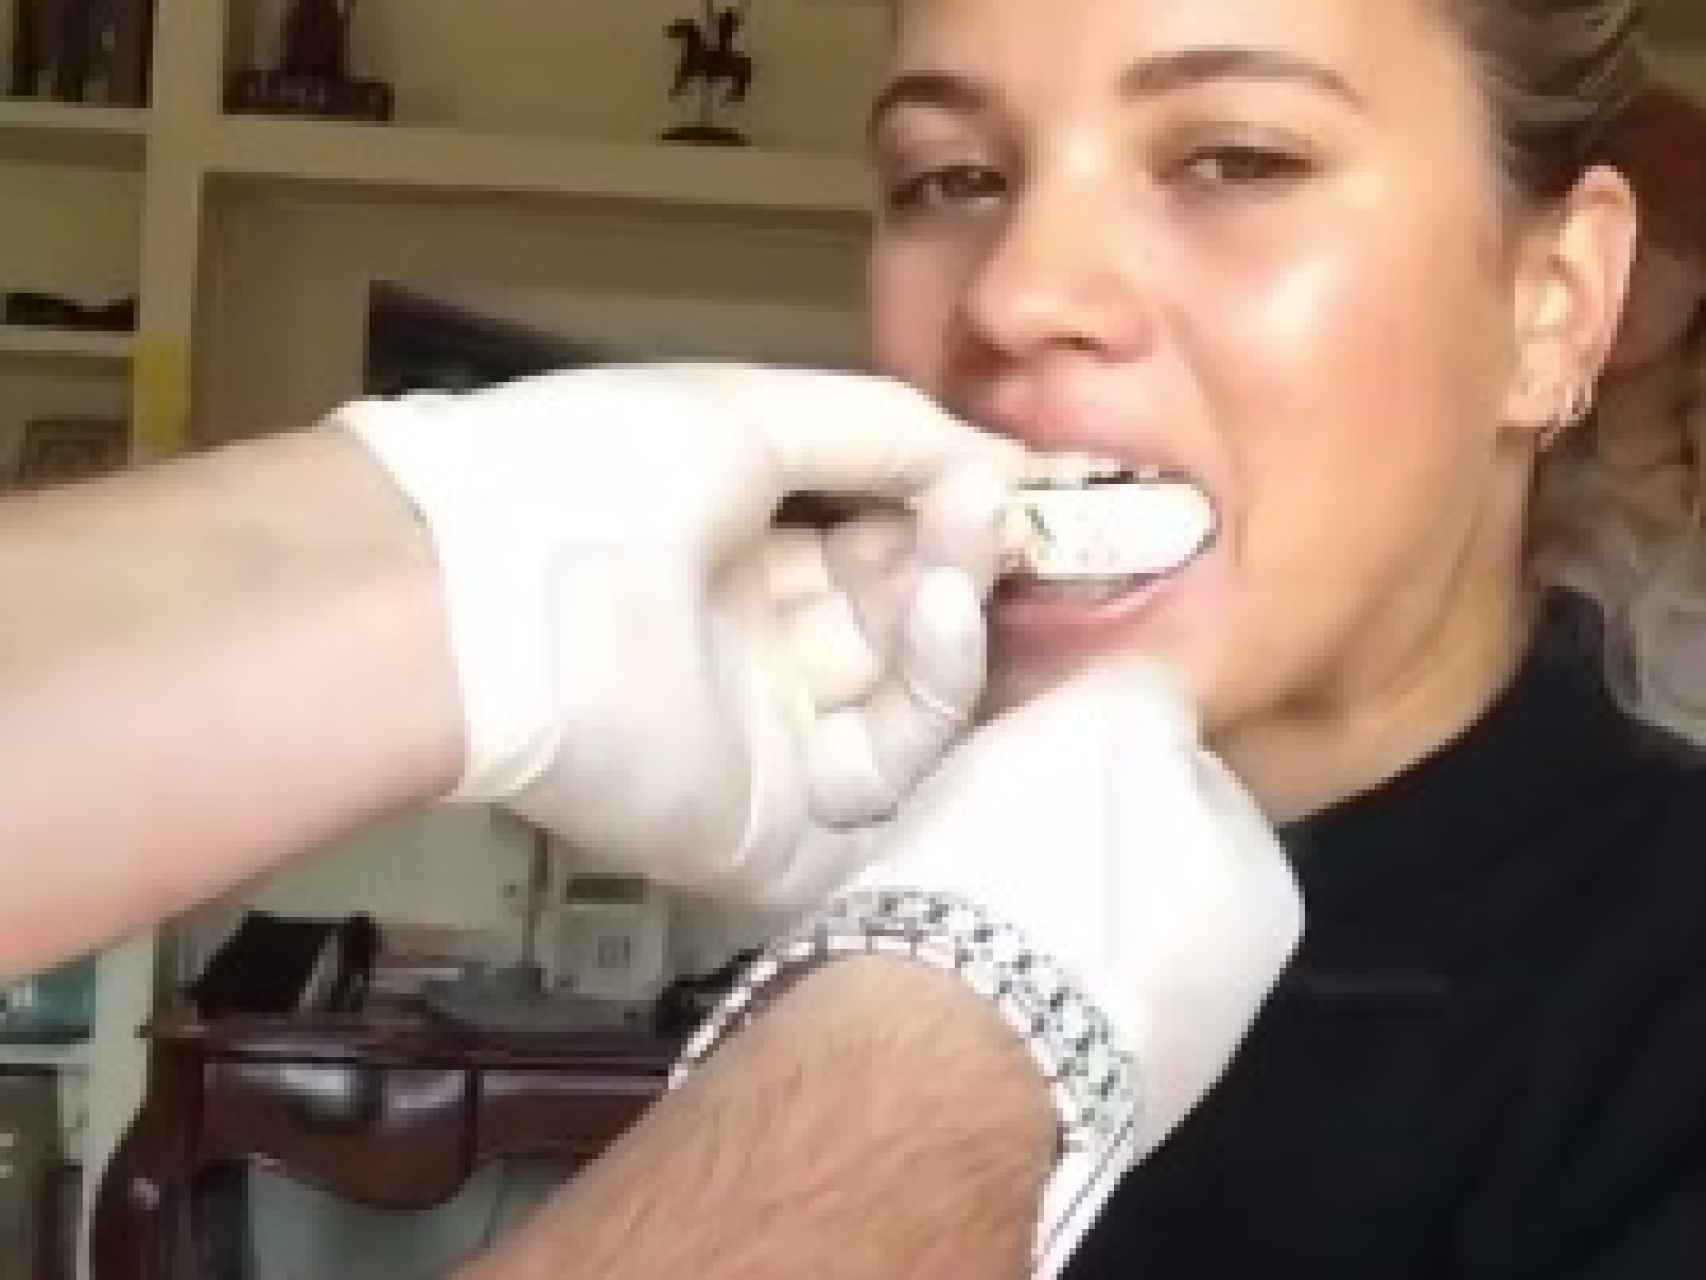 Sofia Richie preparándose para su nueva dentadura.